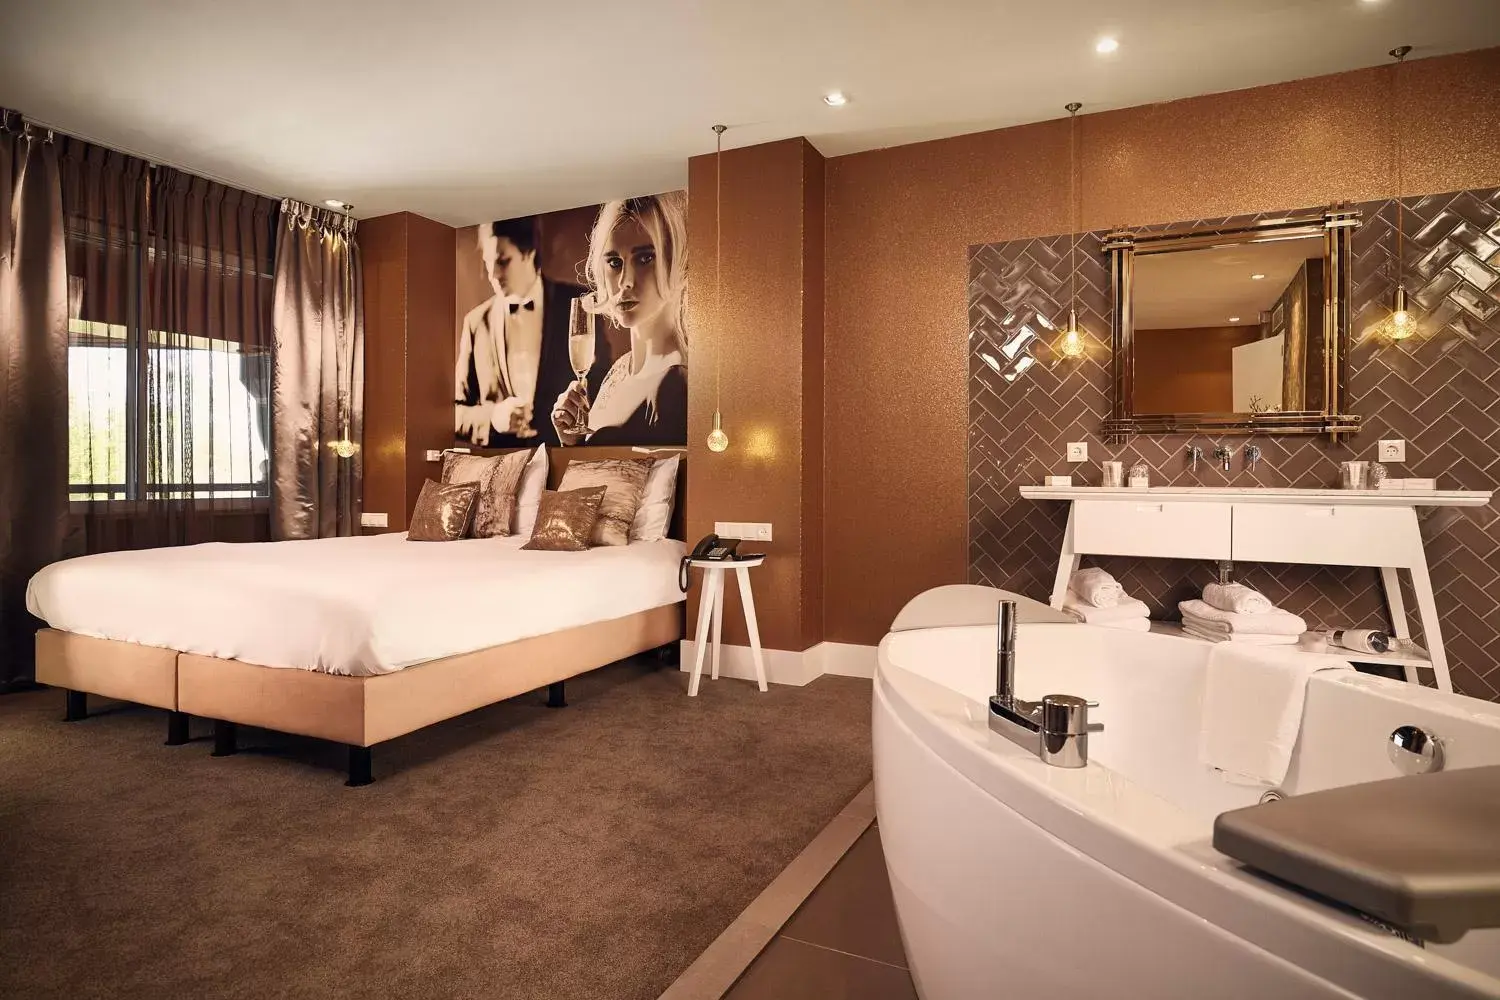 Bed, Bathroom in Van der Valk Hotel Breukelen